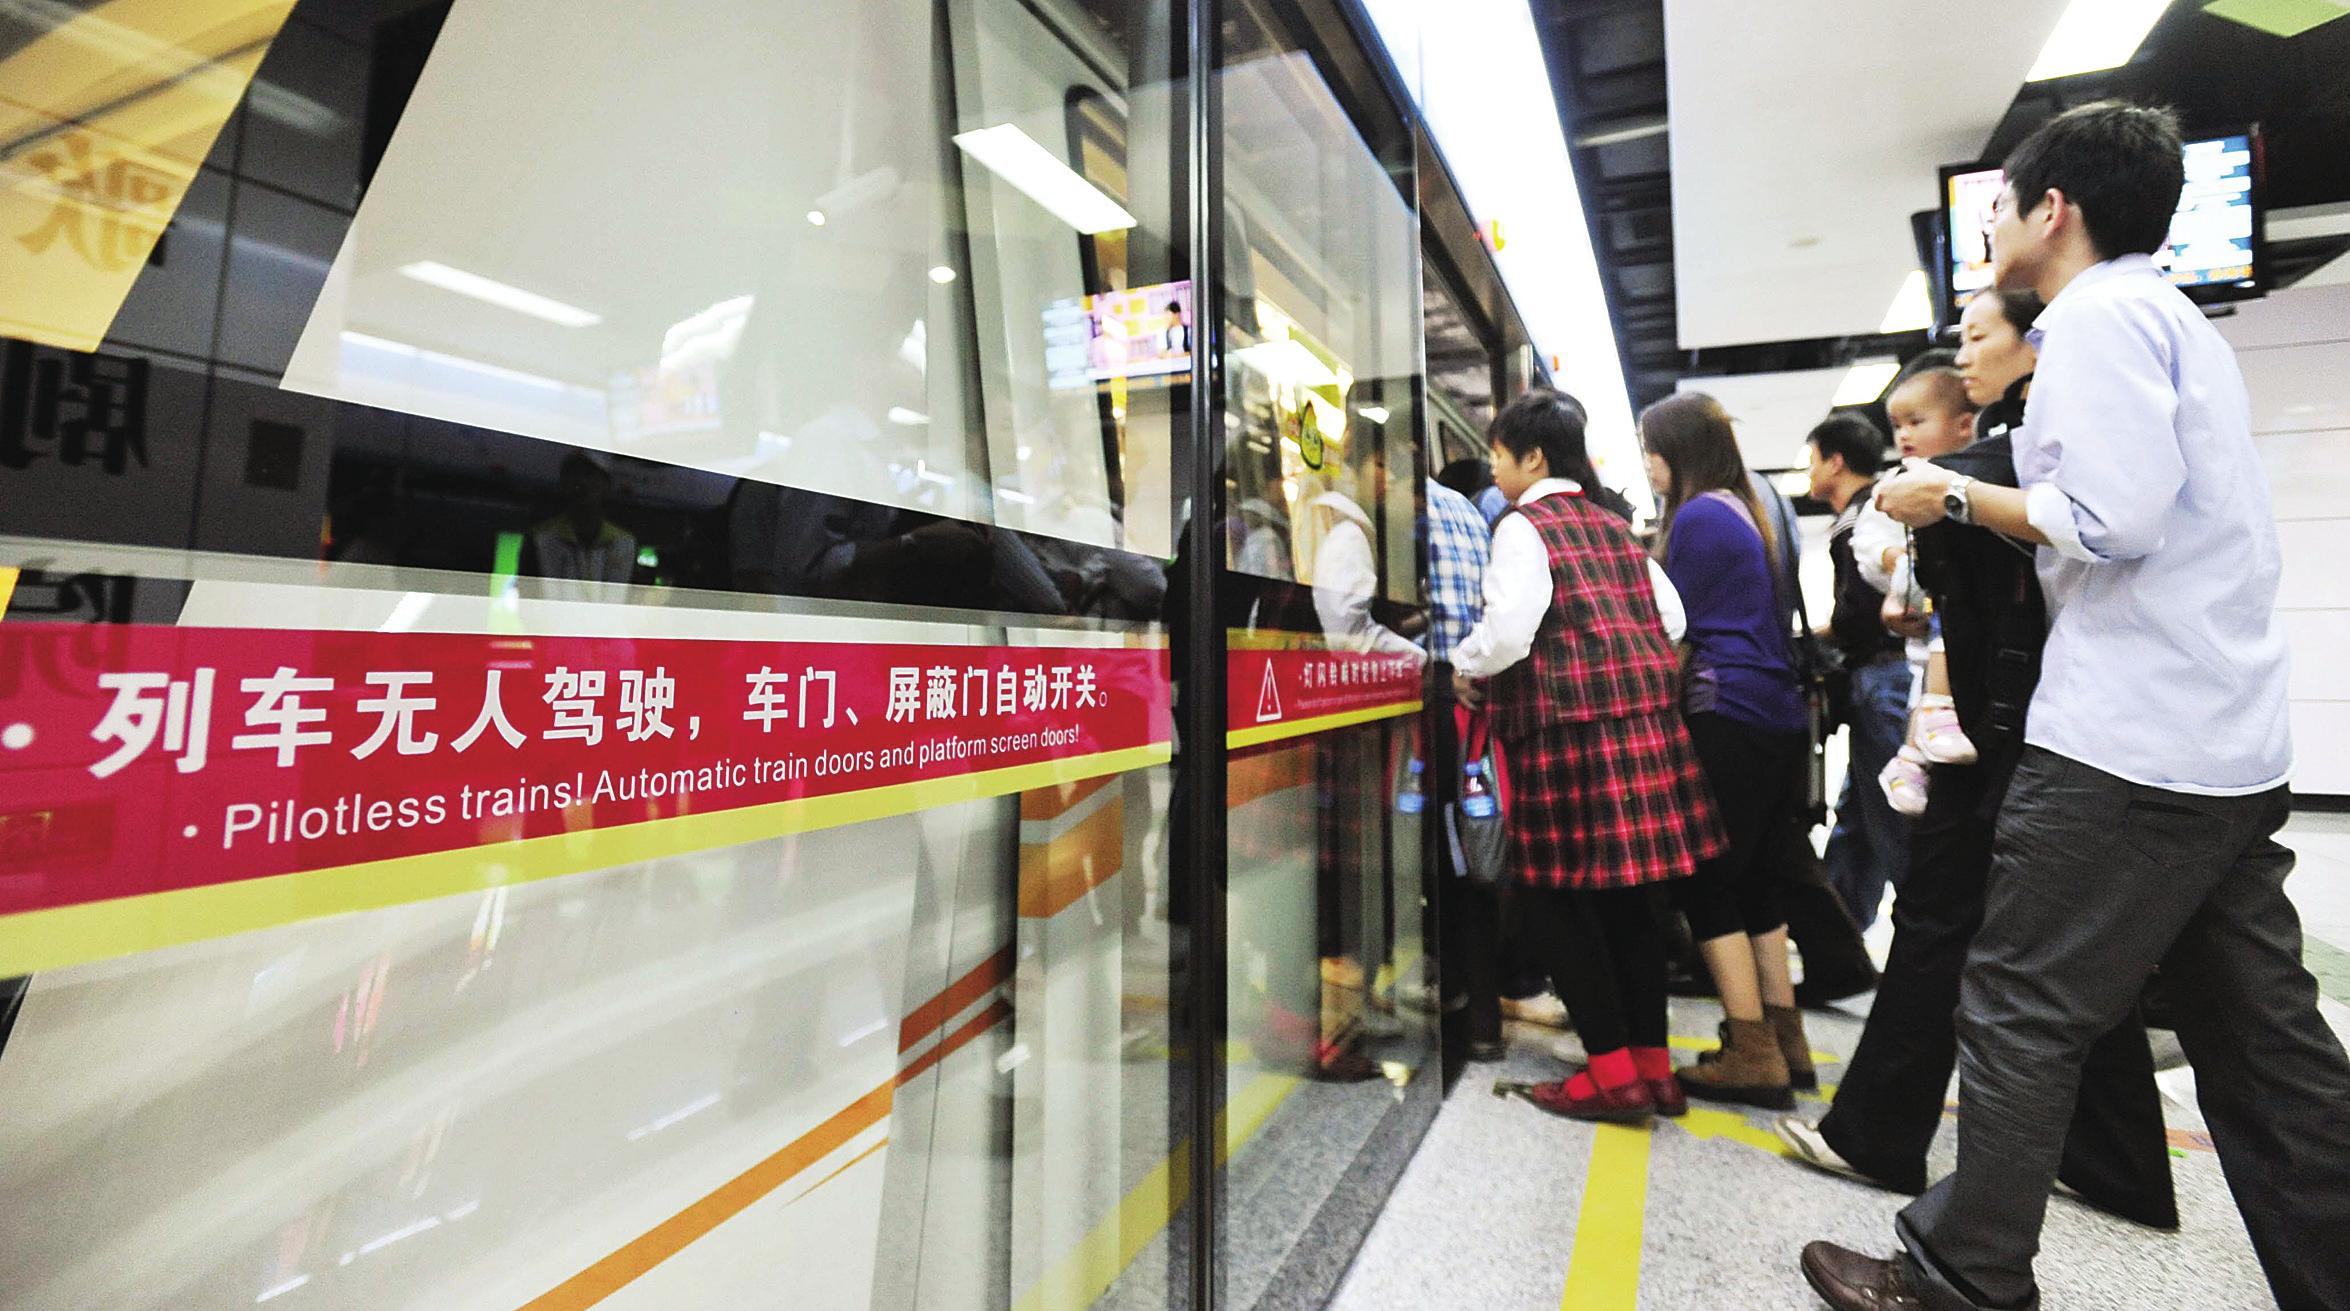 广州珠江新城旅客自动输送系统(简称apm线)于